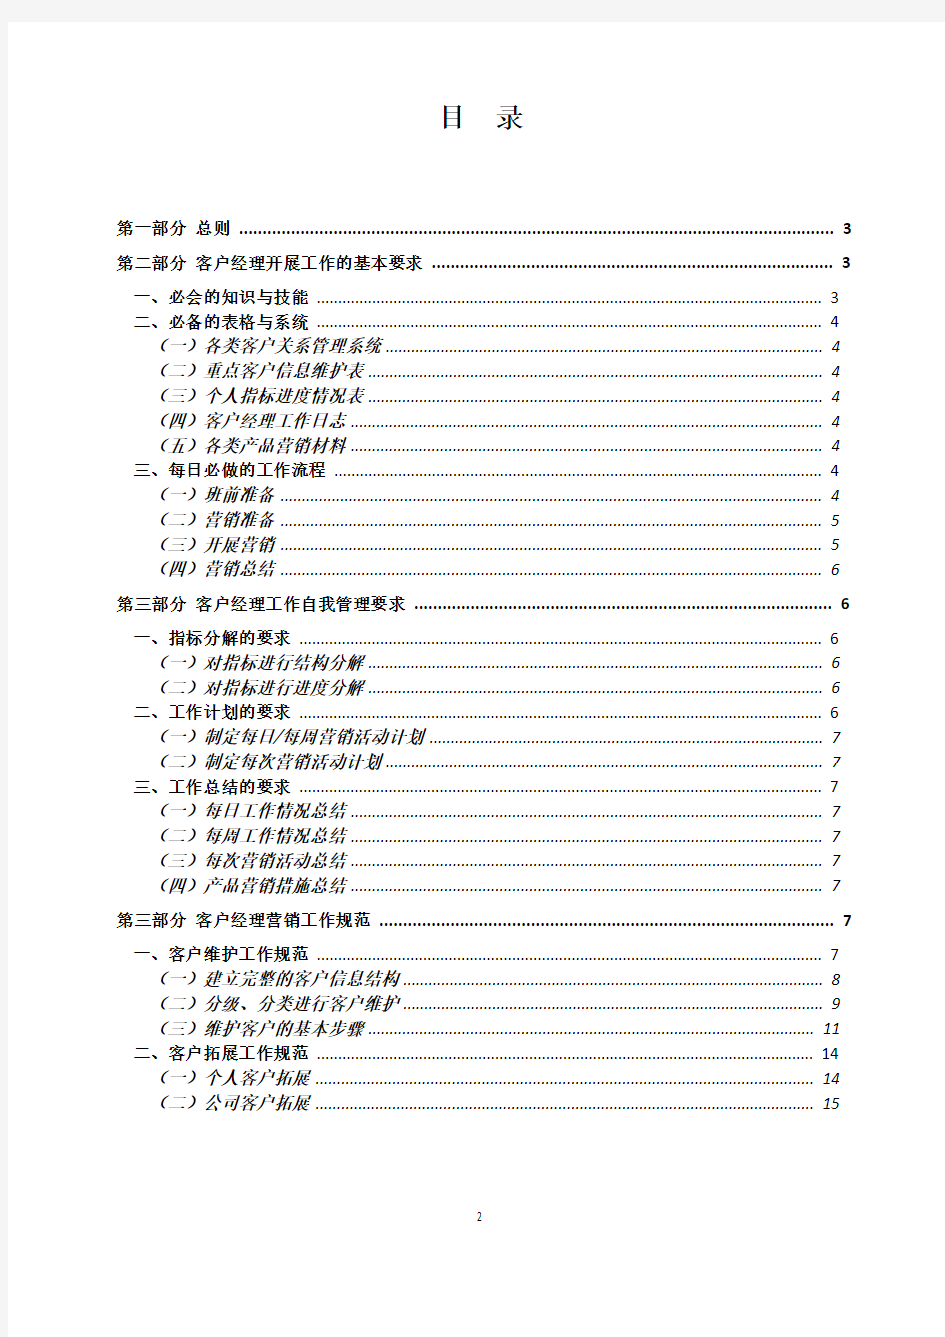 中国银行股份有限公司网点客户经理基础工作手册